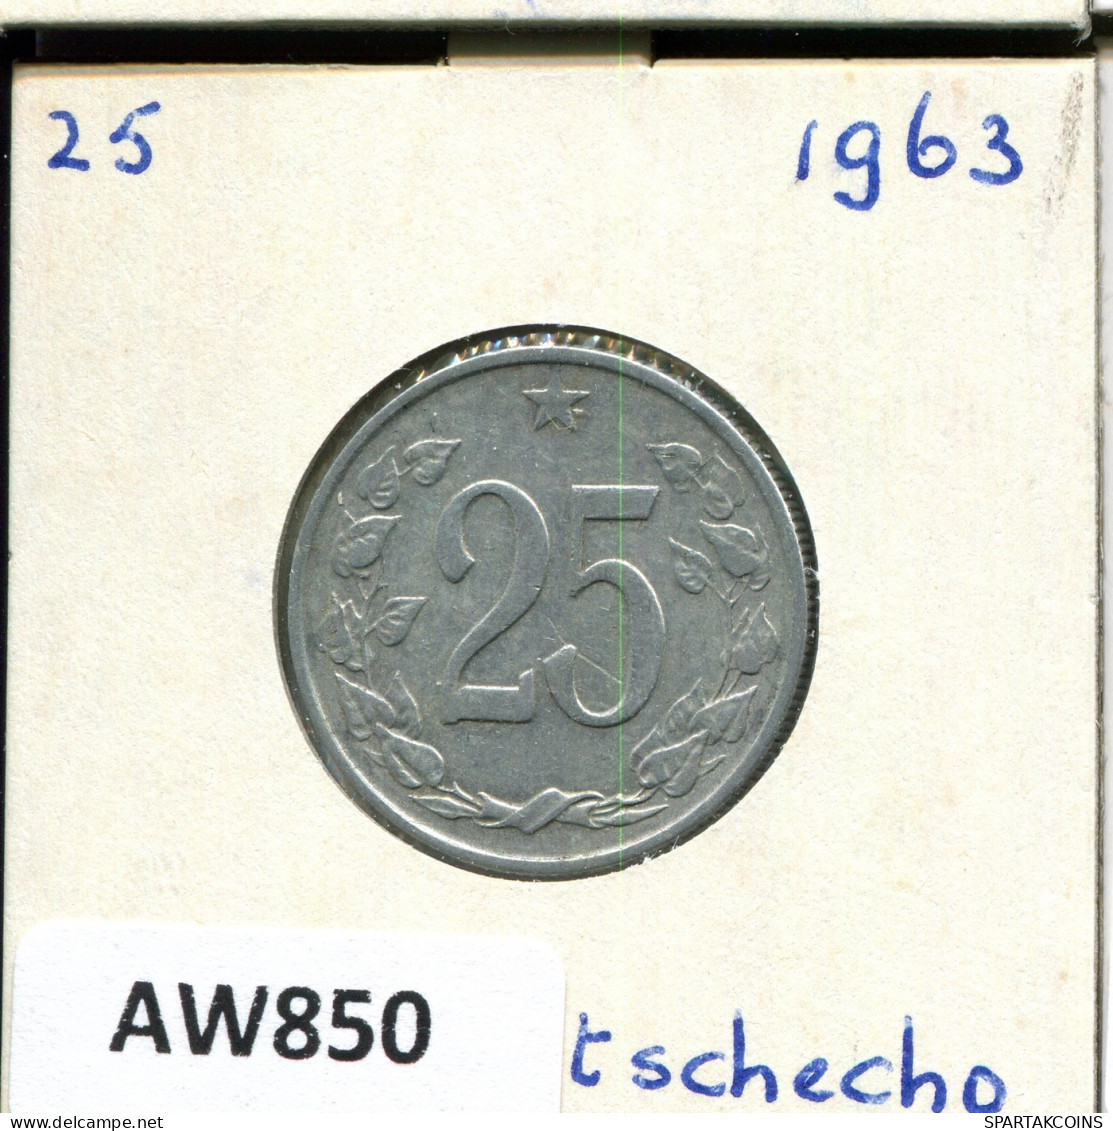 25 KORUN 1963 CZECHOSLOVAKIA Coin #AW850.U.A - Tsjechoslowakije